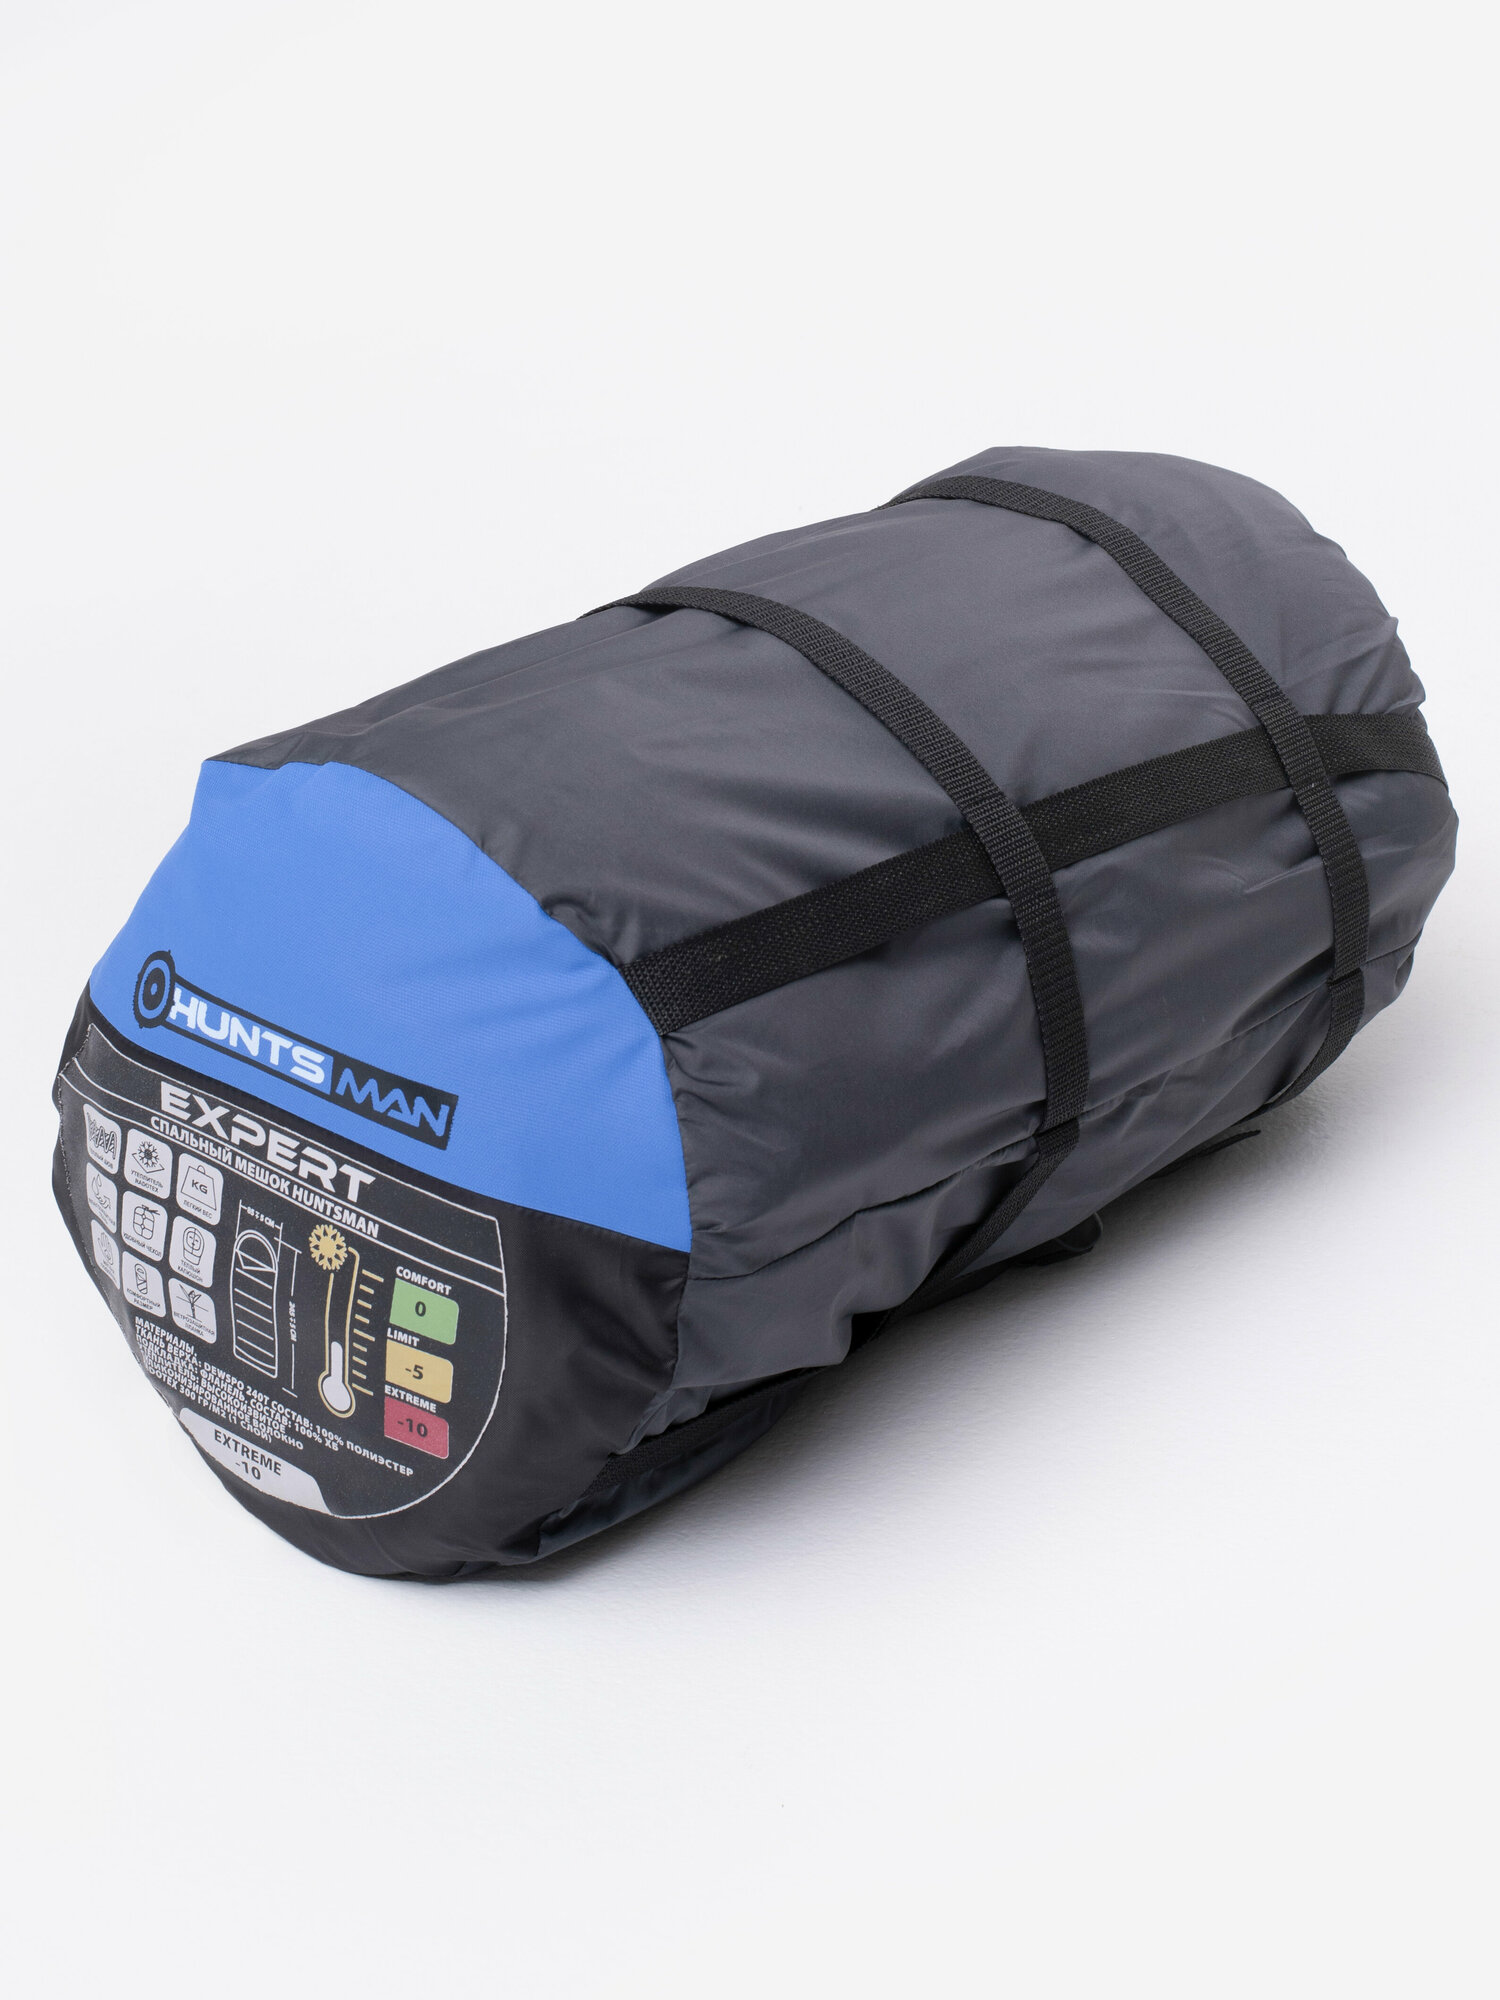 Спальный мешок Huntsman Эксперт цвет Серый/Терракотовый ткань Дюспо RADOTEX 300 гр - -10 С